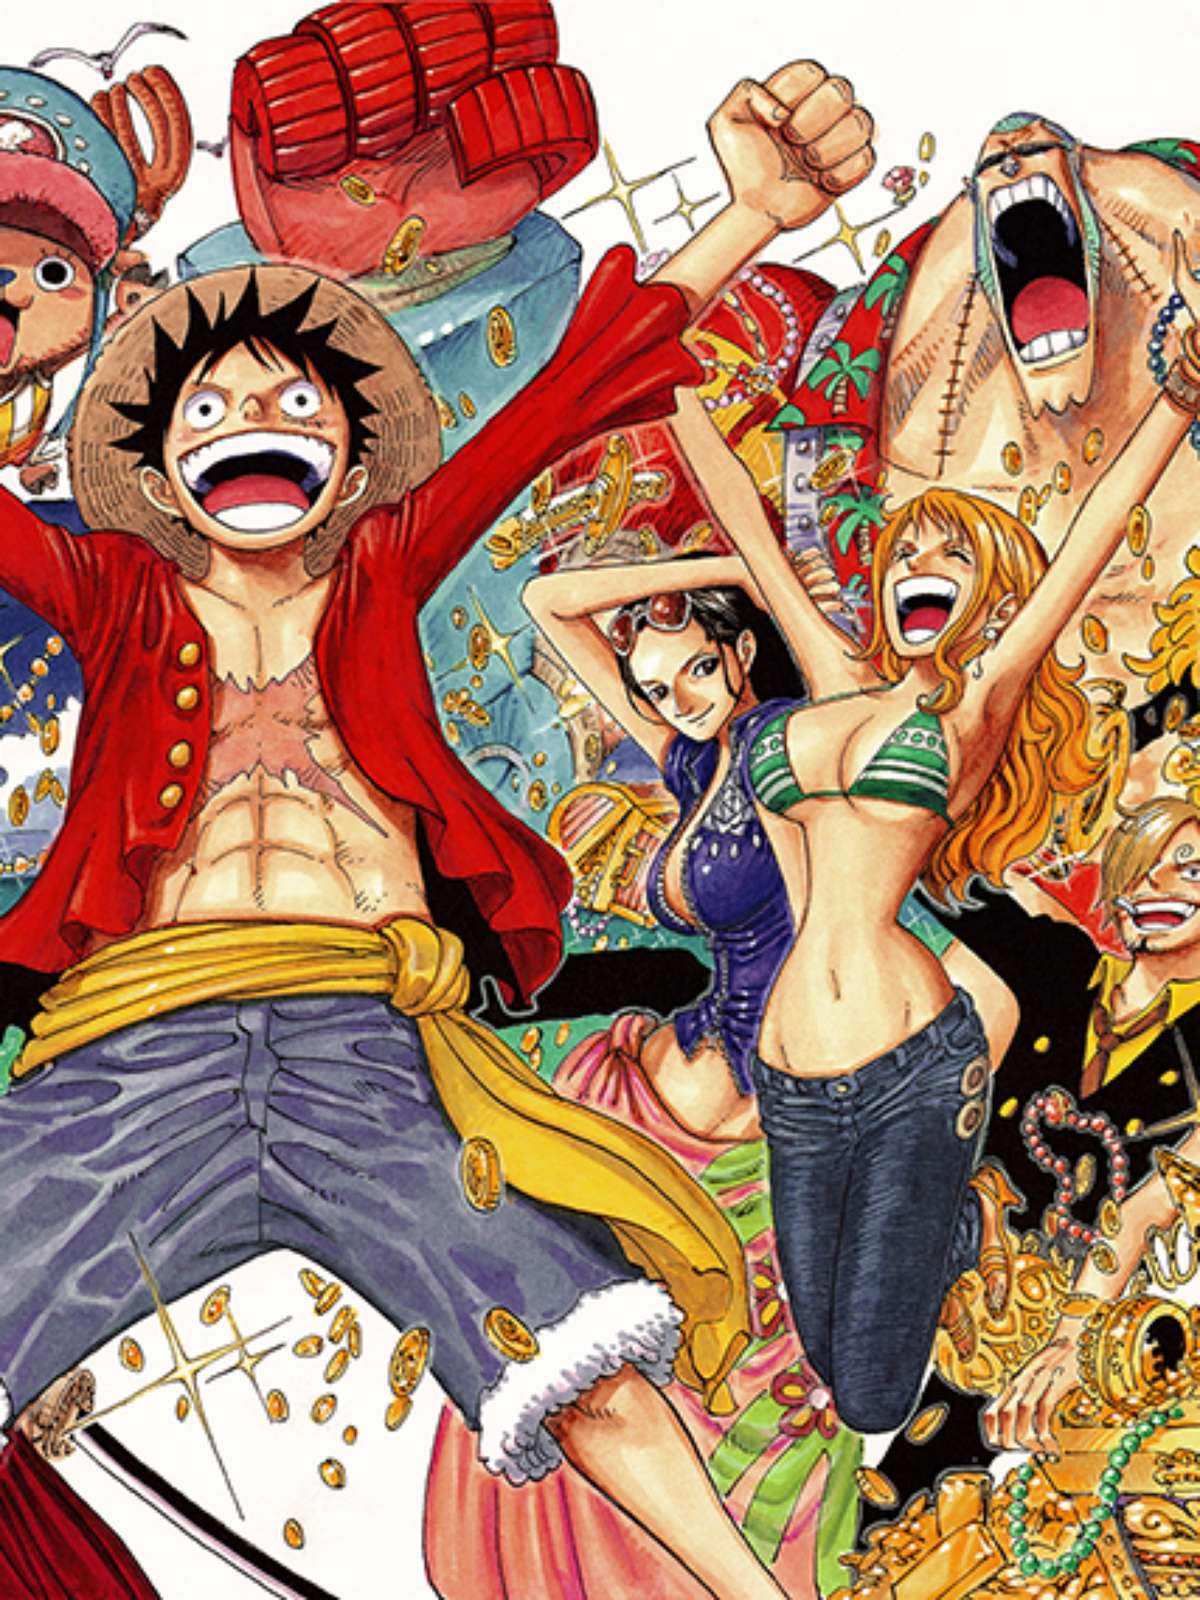 Netflix revela dublador brasileiro de Luffy, de One Piece